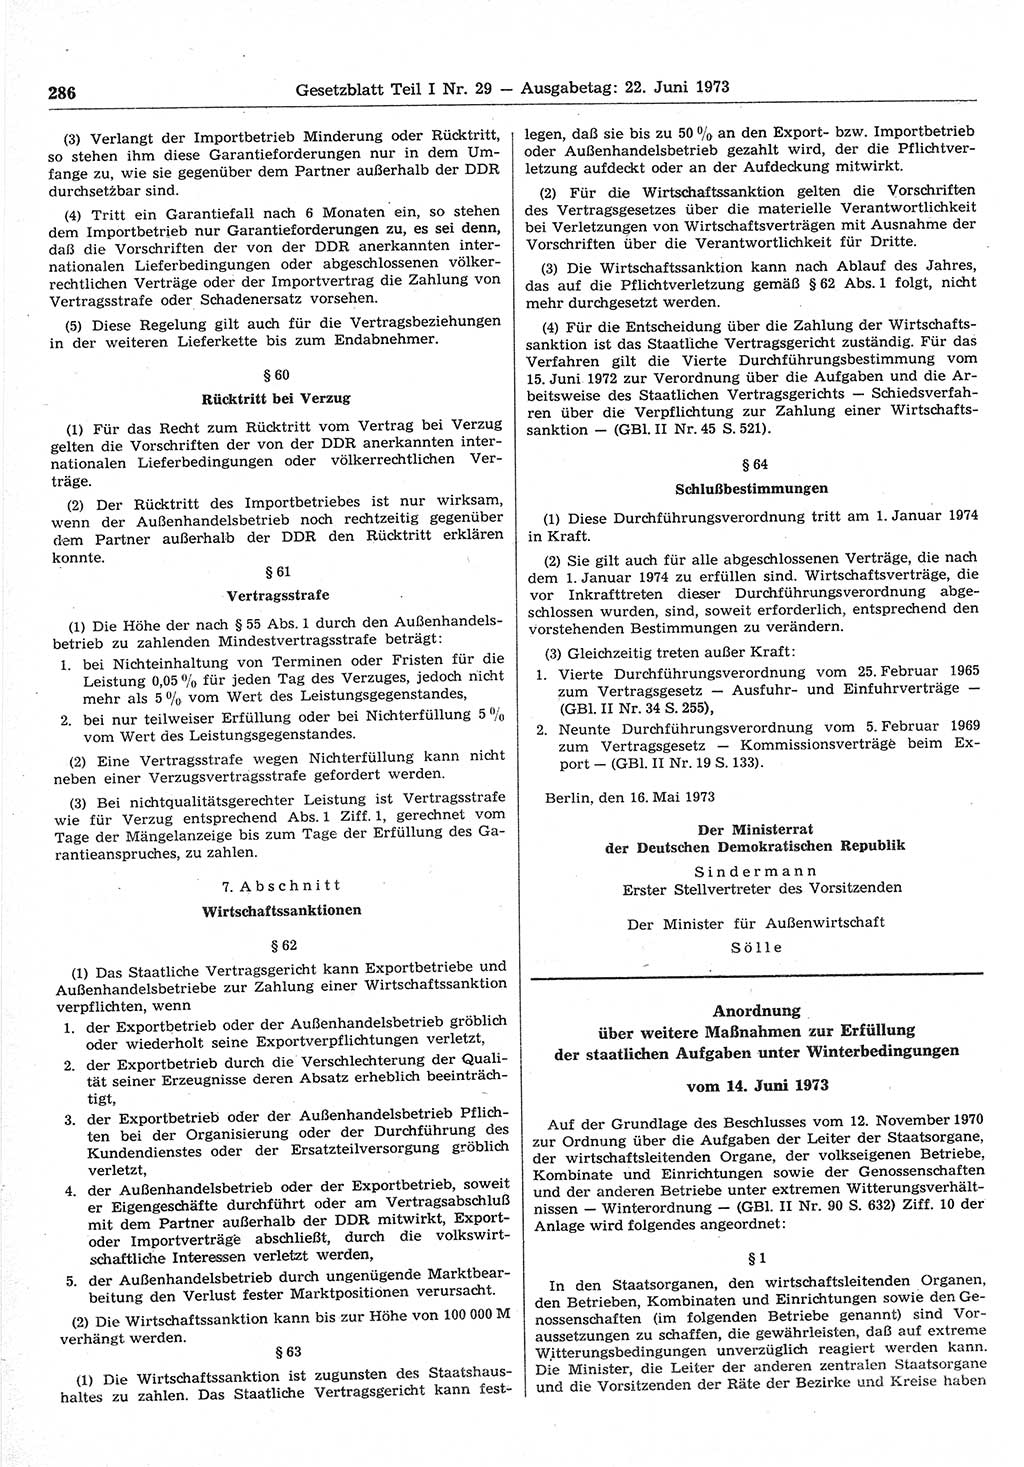 Gesetzblatt (GBl.) der Deutschen Demokratischen Republik (DDR) Teil Ⅰ 1973, Seite 286 (GBl. DDR Ⅰ 1973, S. 286)